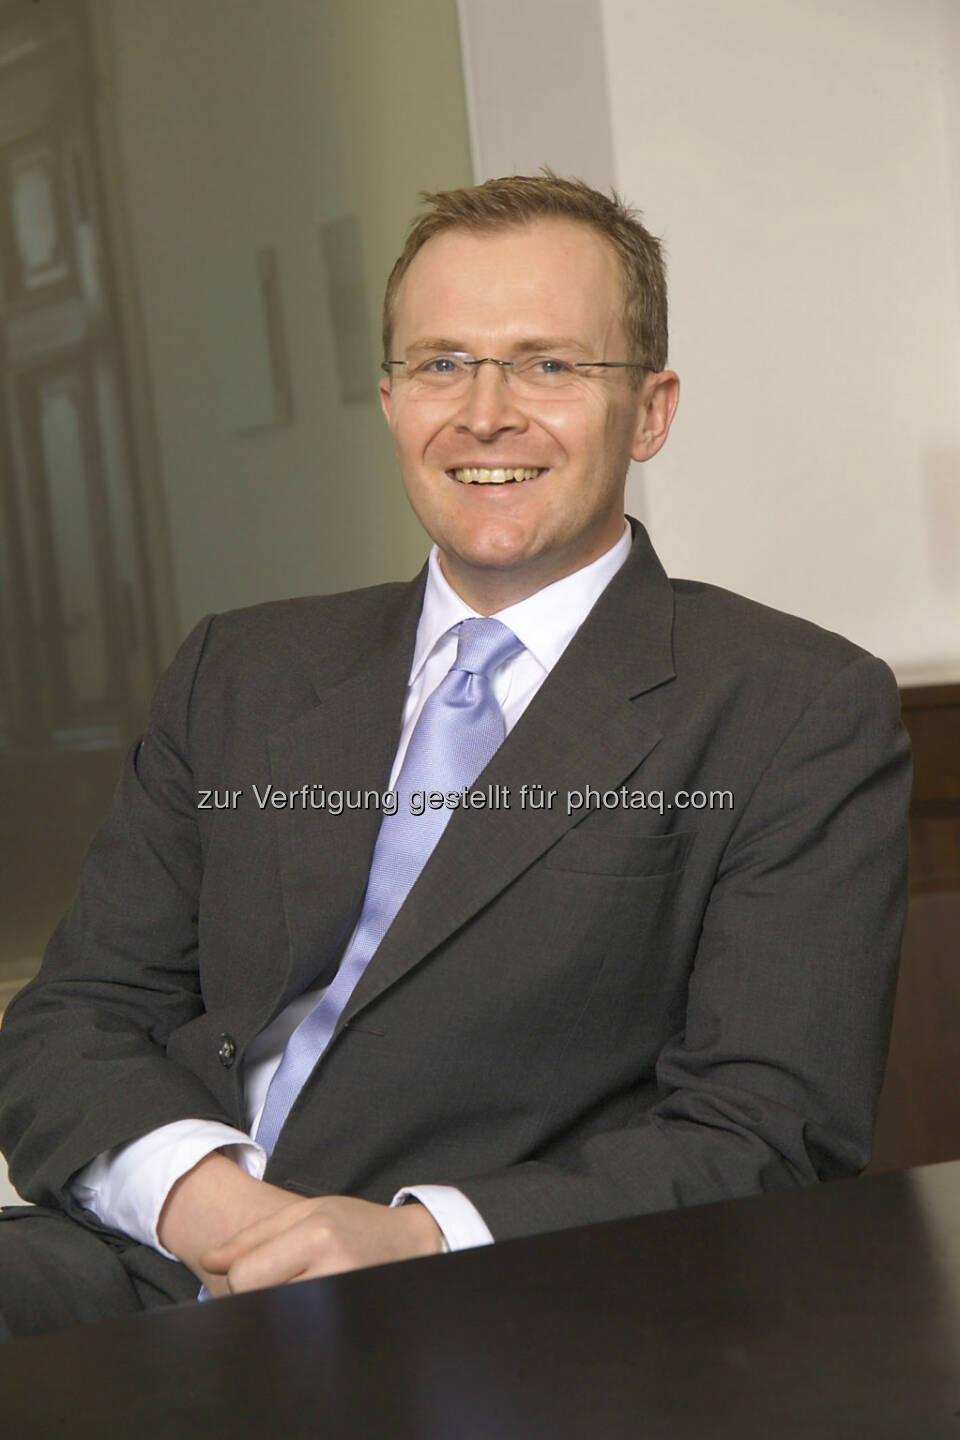 Andreas Lessmann verstärkt zum 1. November 2012 das Team des unabhängigen Vermögensverwalters Fidelity Worldwide Investment in Wien